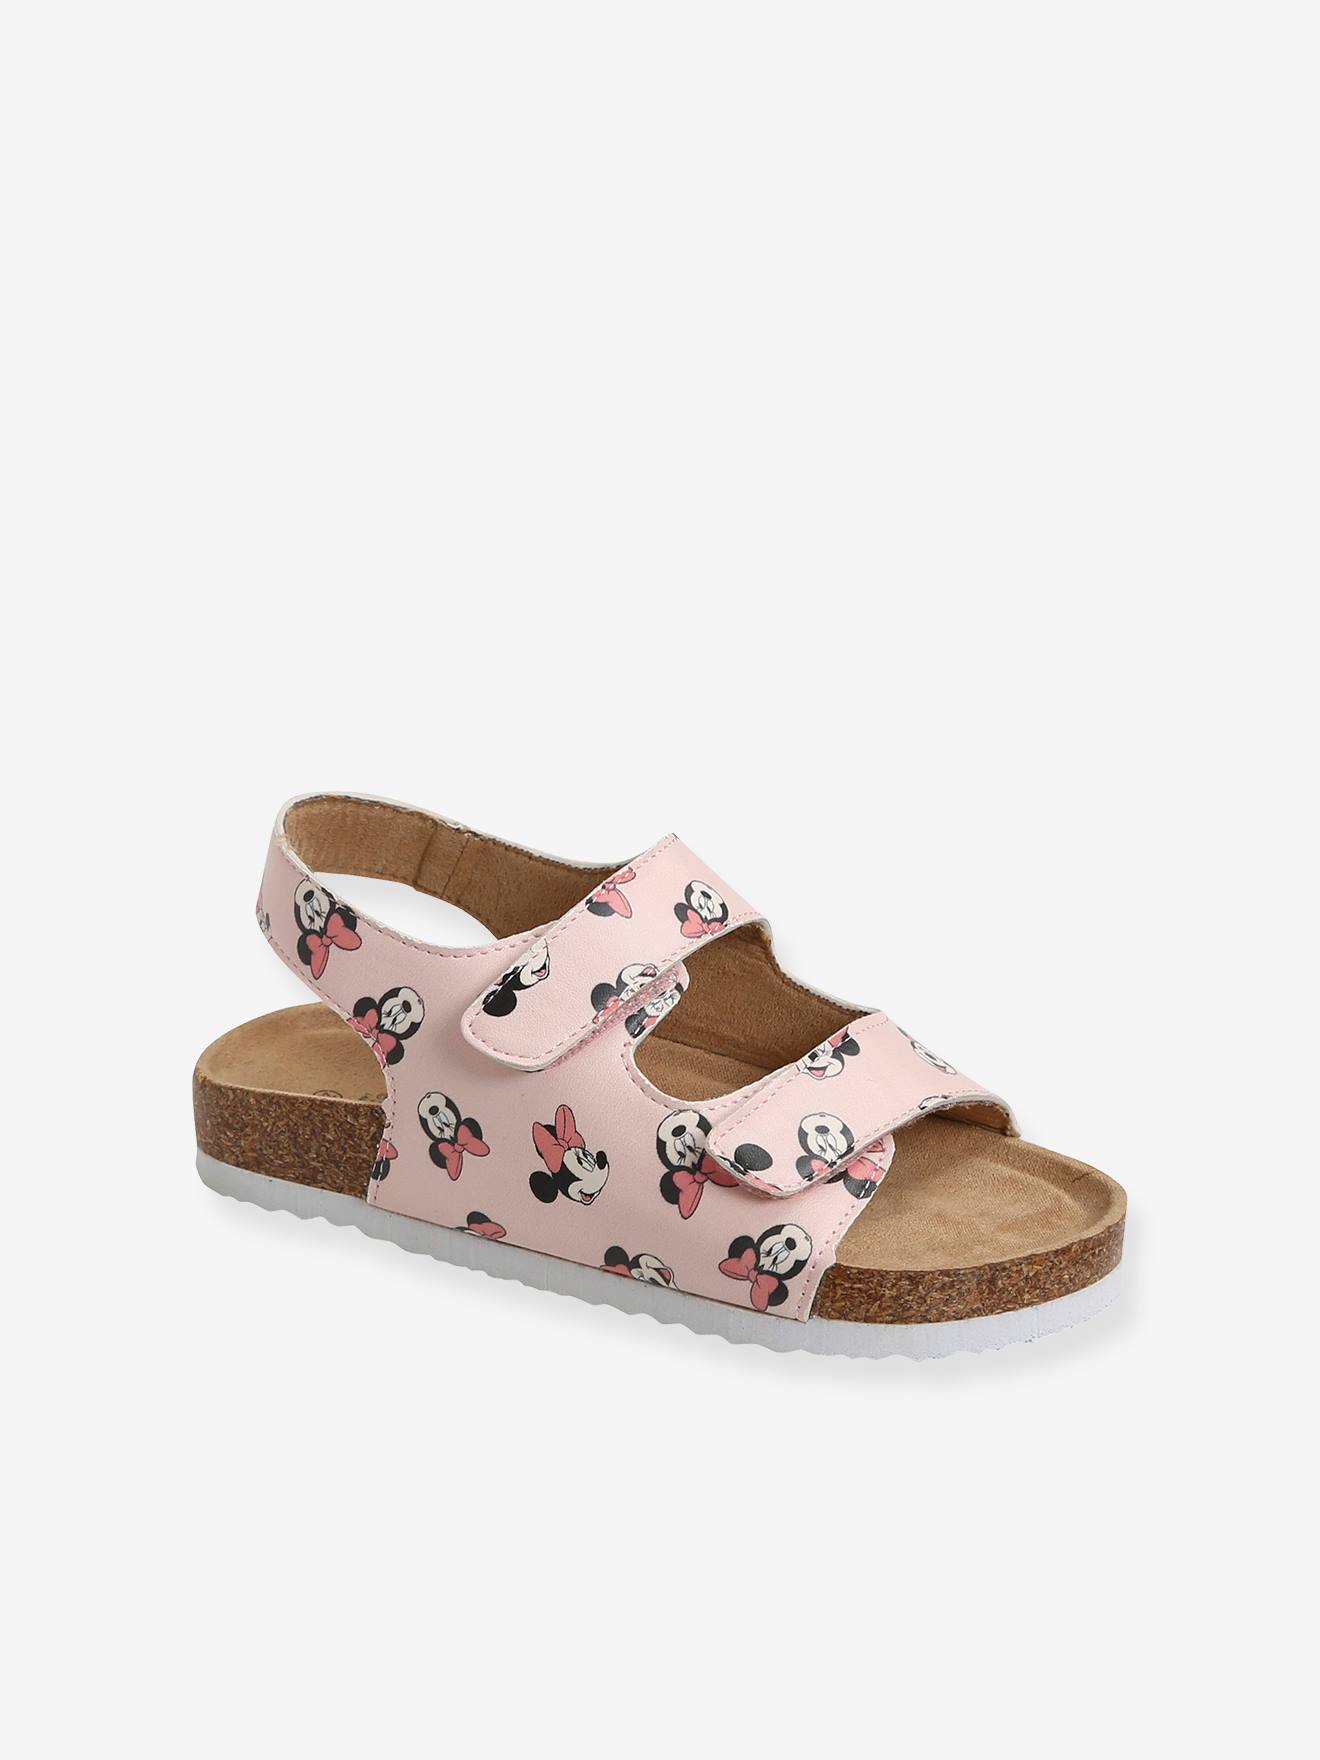 Minnie Mouse Toddler Girls Light Up Sandals, Sizes 7-12 - Walmart.com